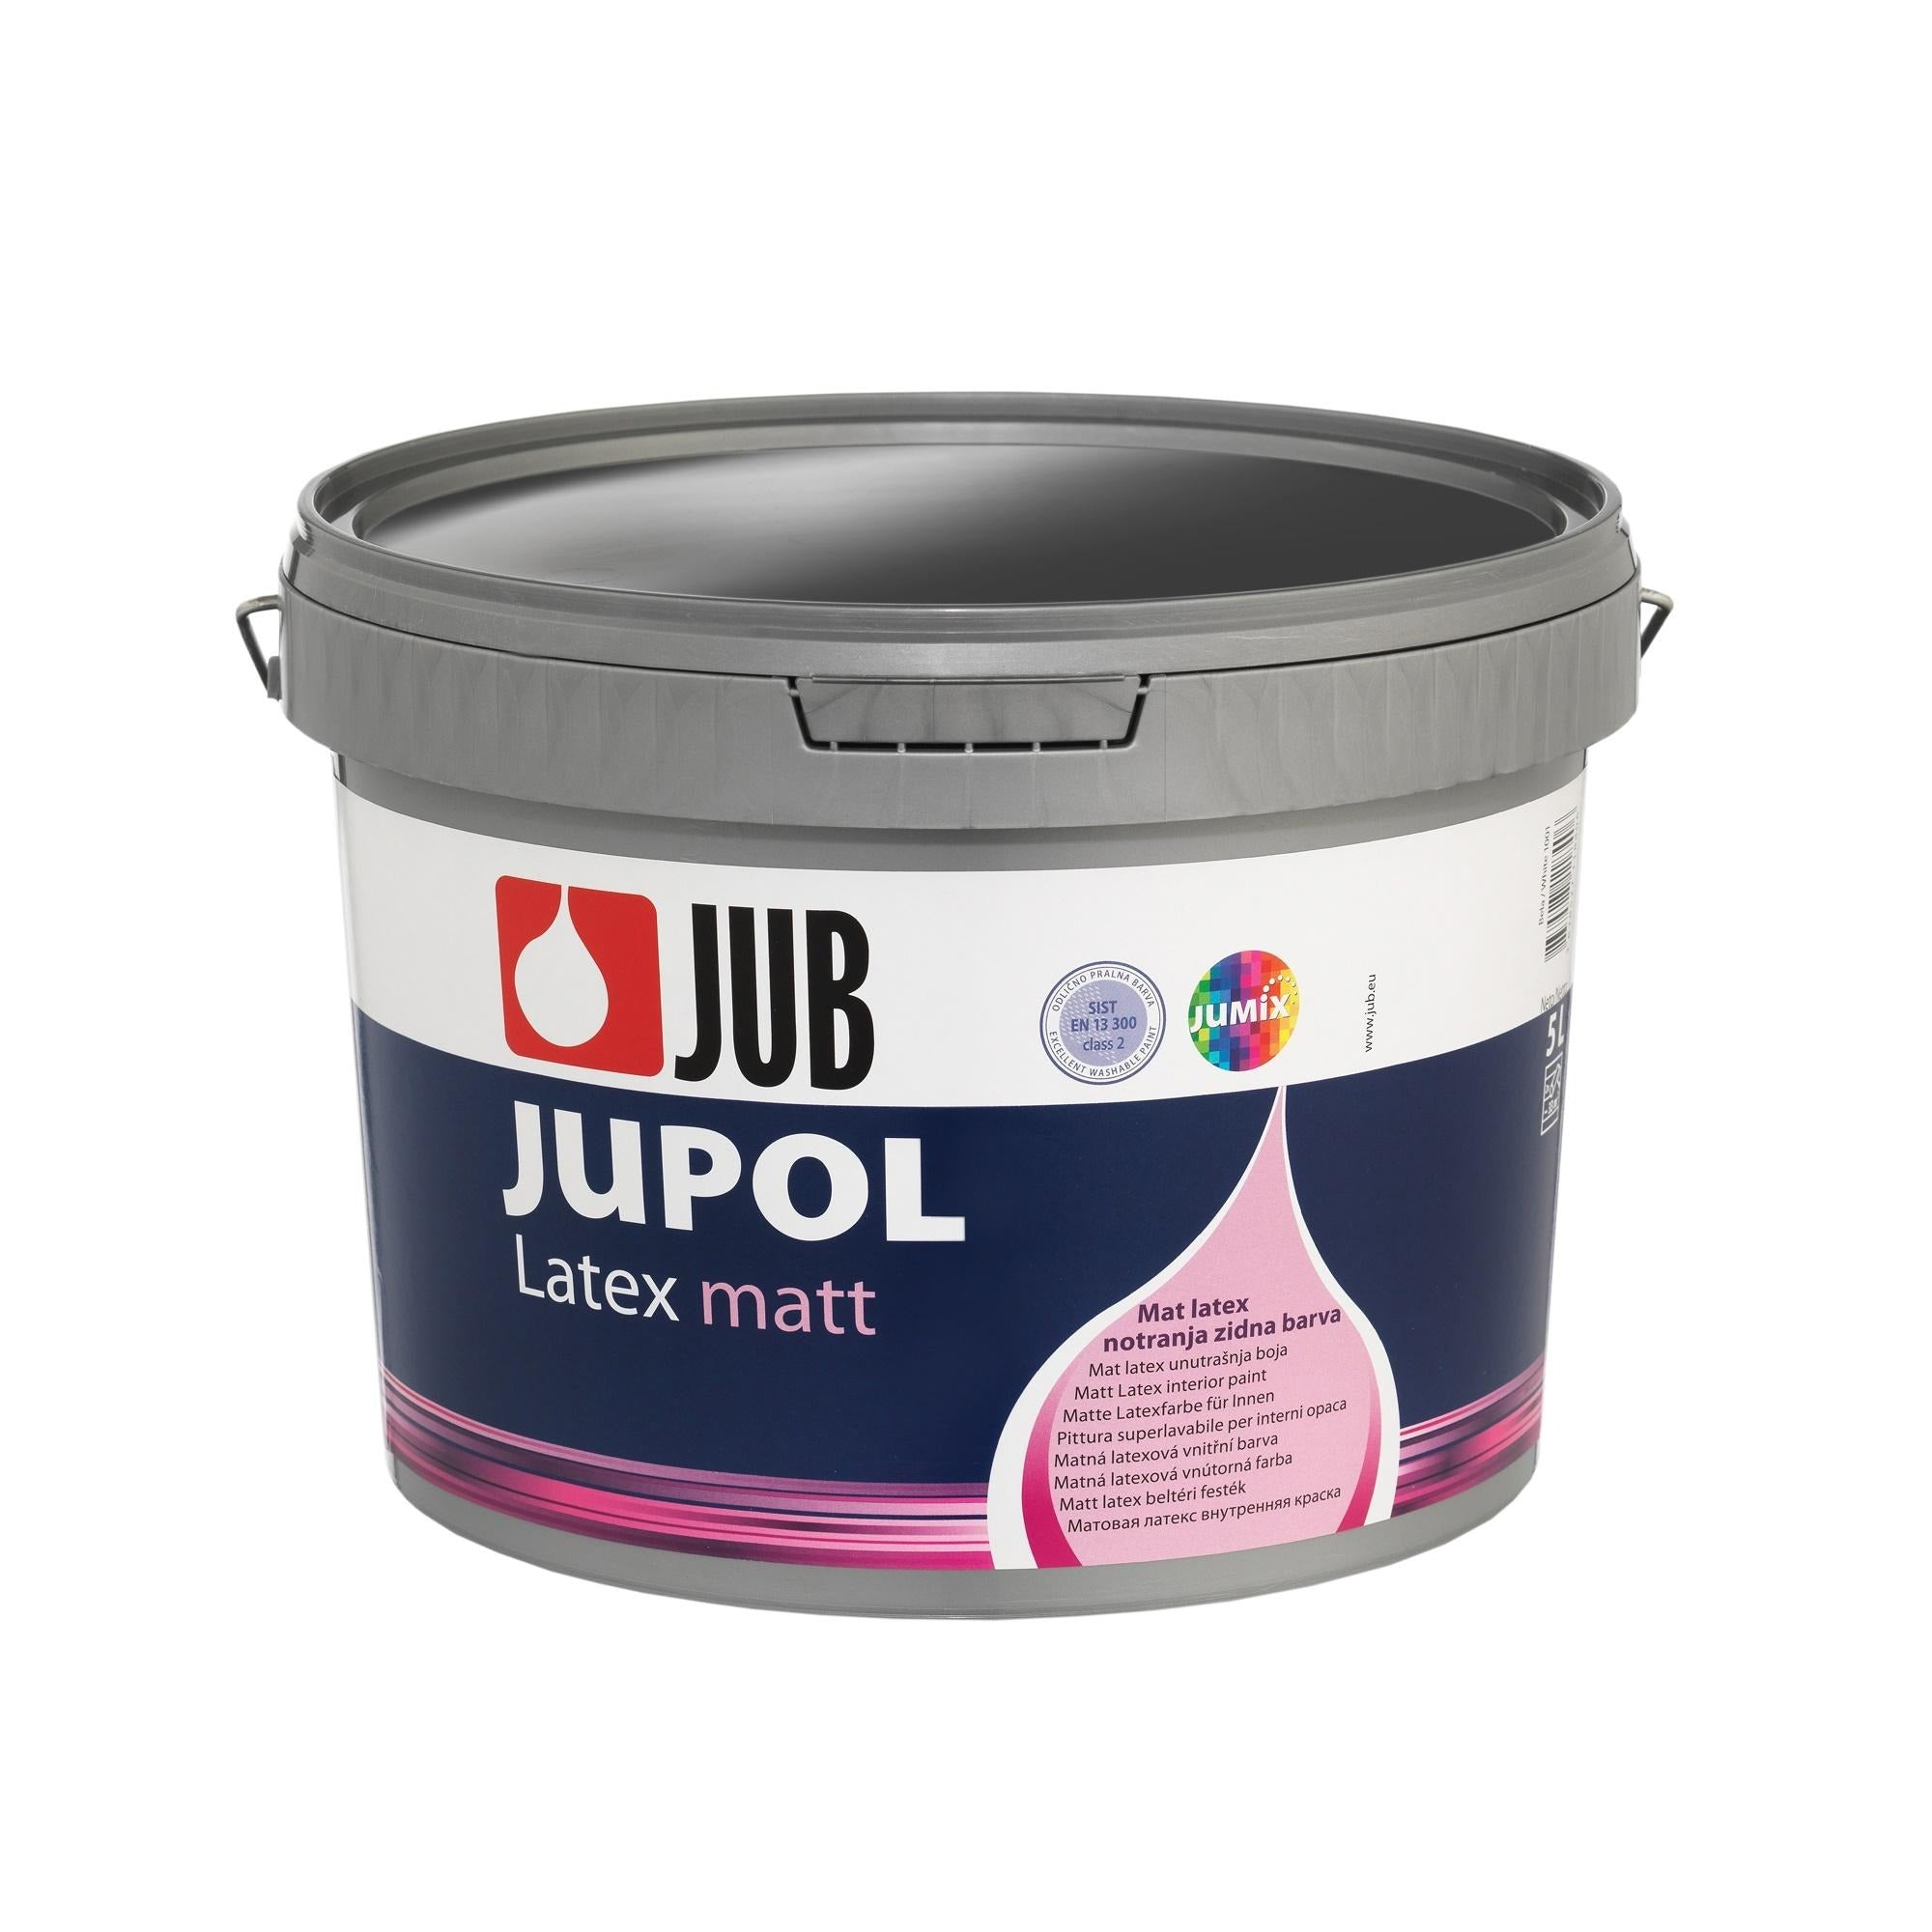 JUB JUPOL Latex matt vnitřní omyvatelná malířská barva 5 l